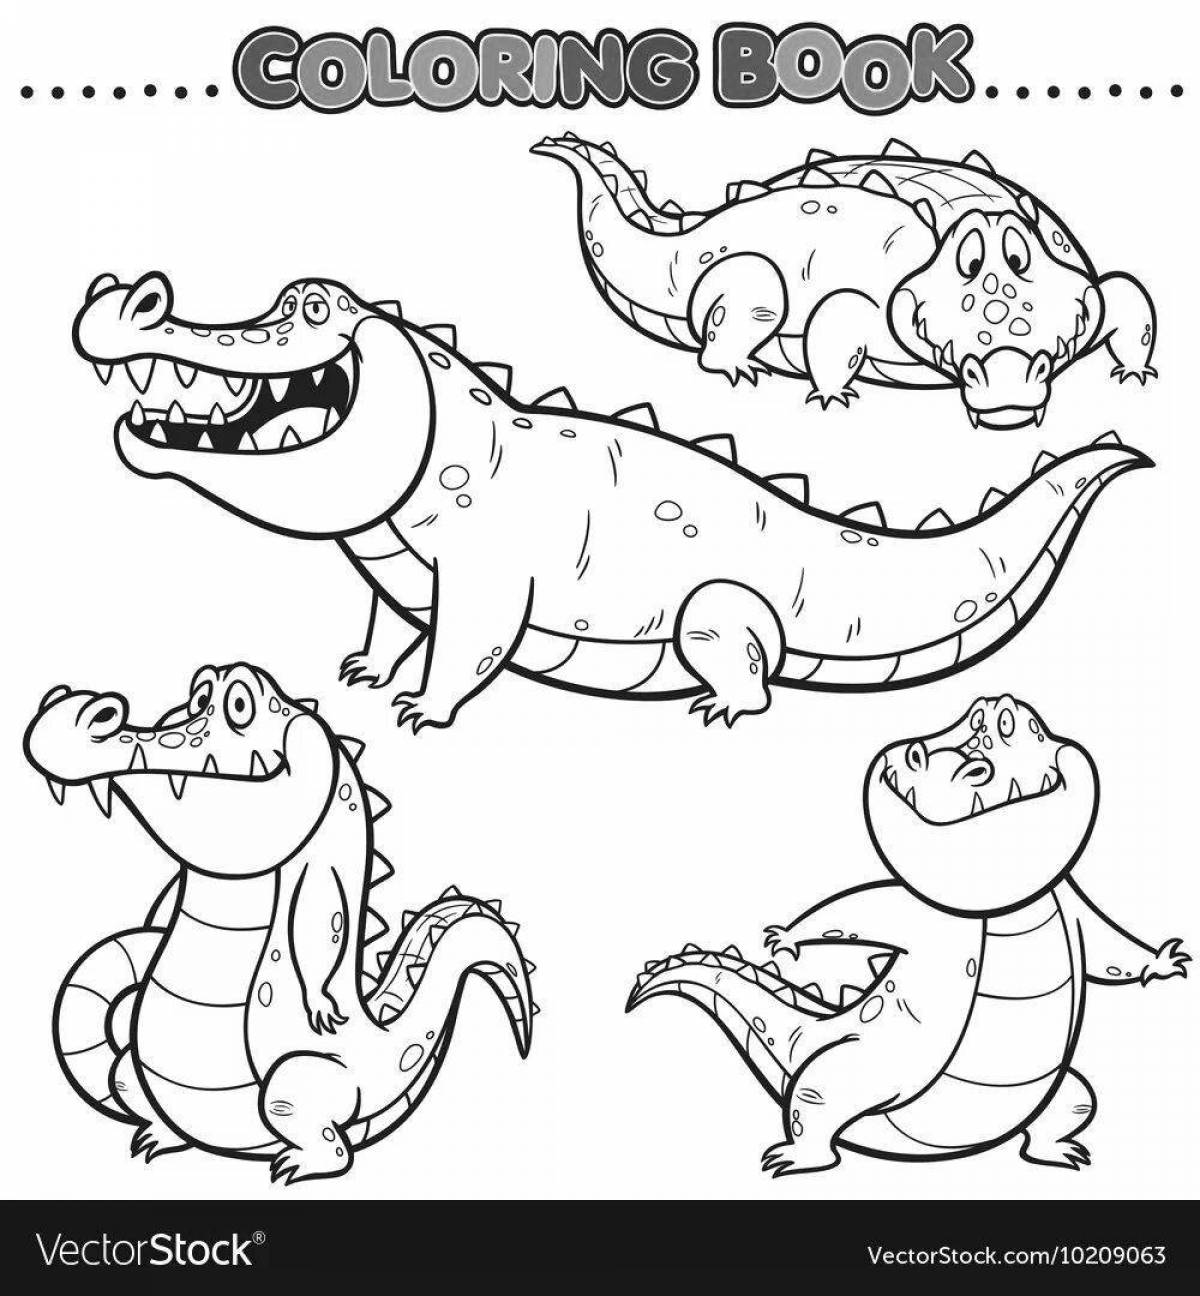 Увлекательная раскраска крокодил для детей 4-5 лет